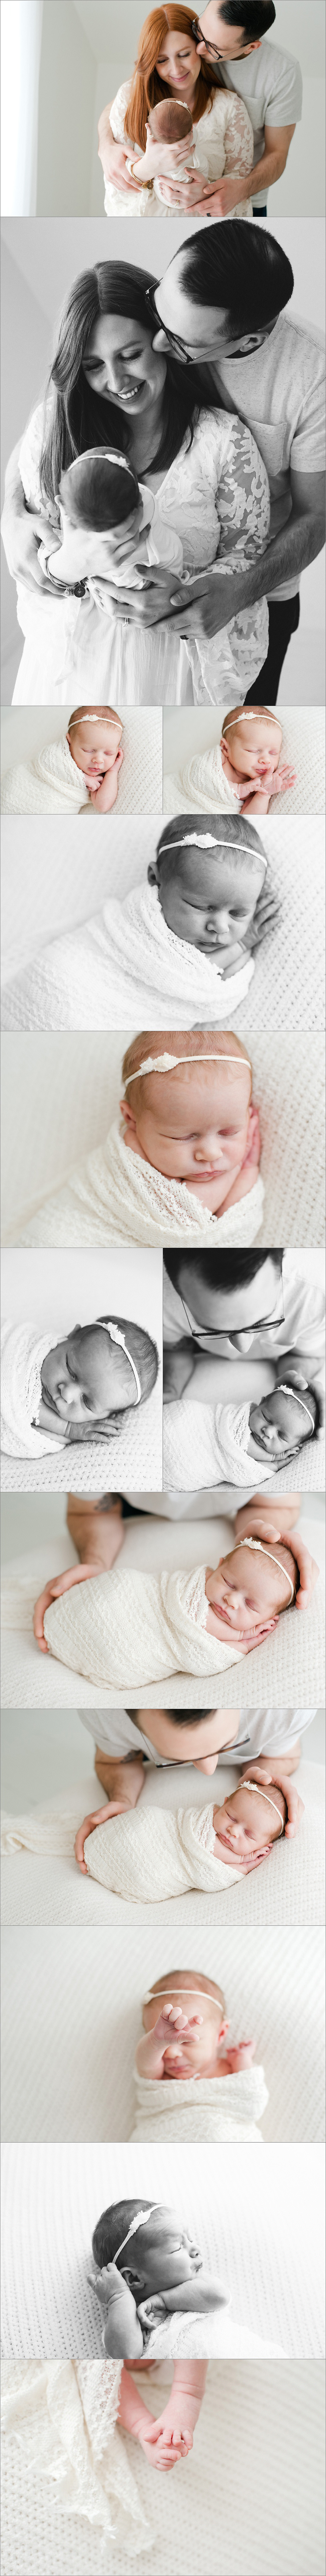 stunning newborn baby photography natural